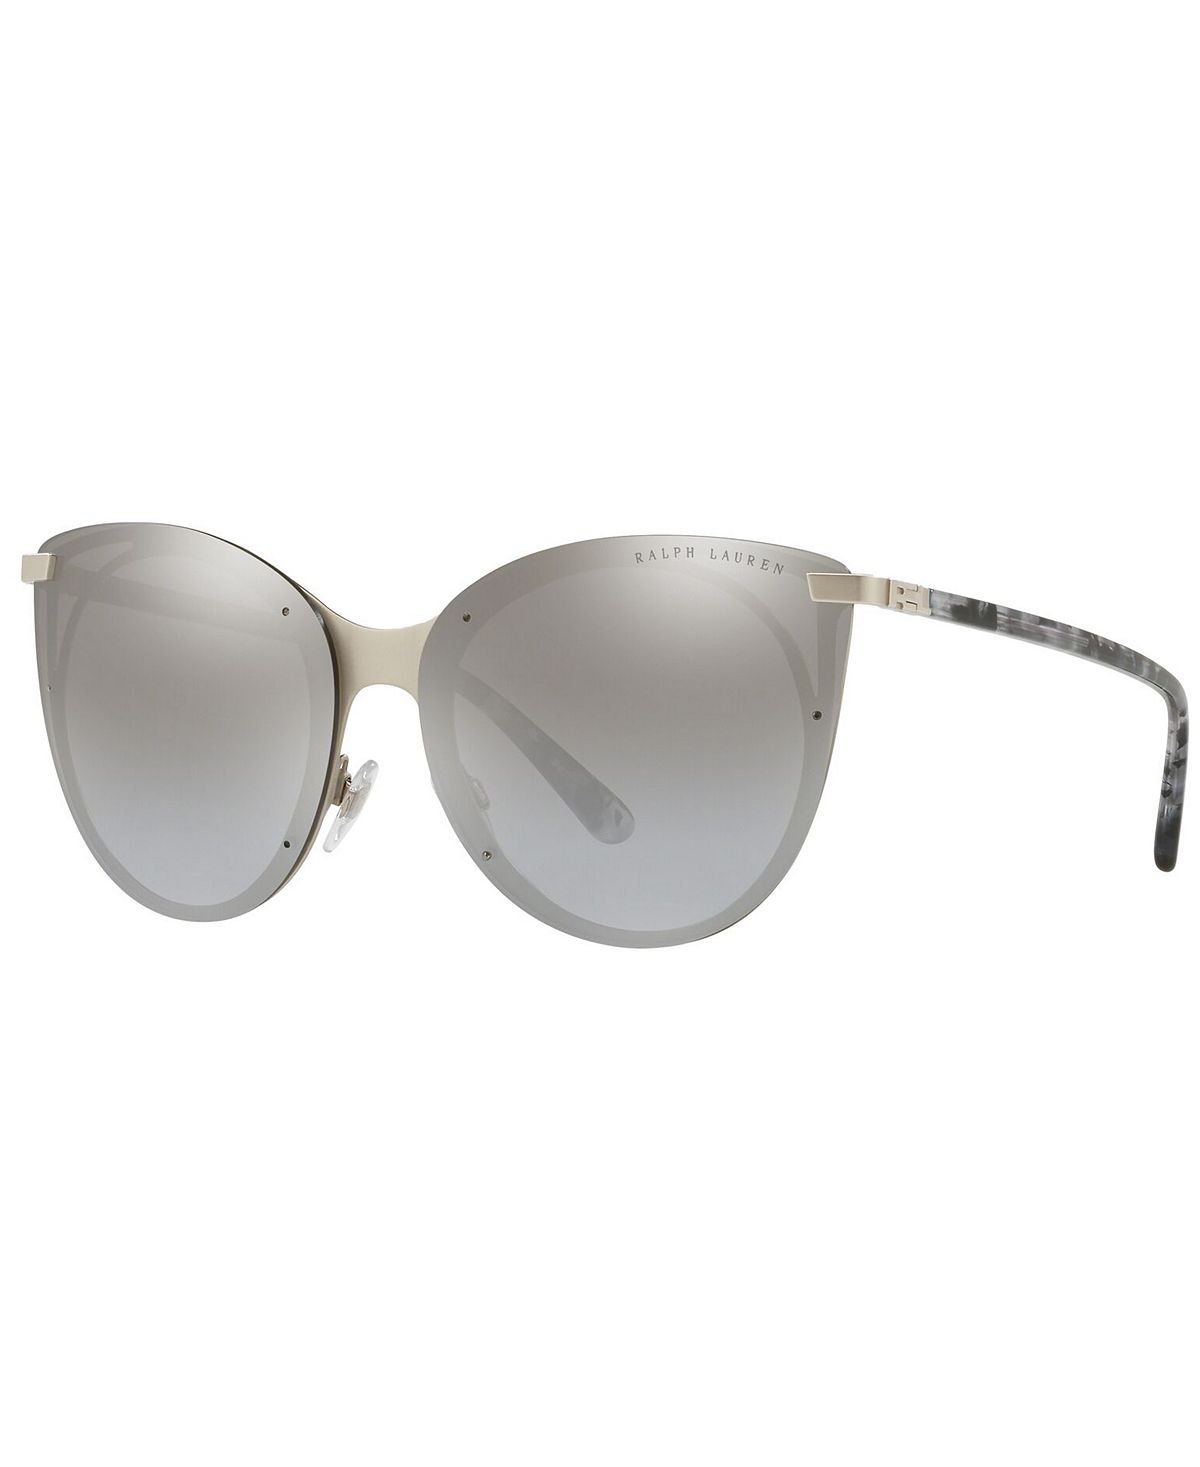 Женские солнцезащитные очки, RL7059 63 Ralph Lauren фотографии